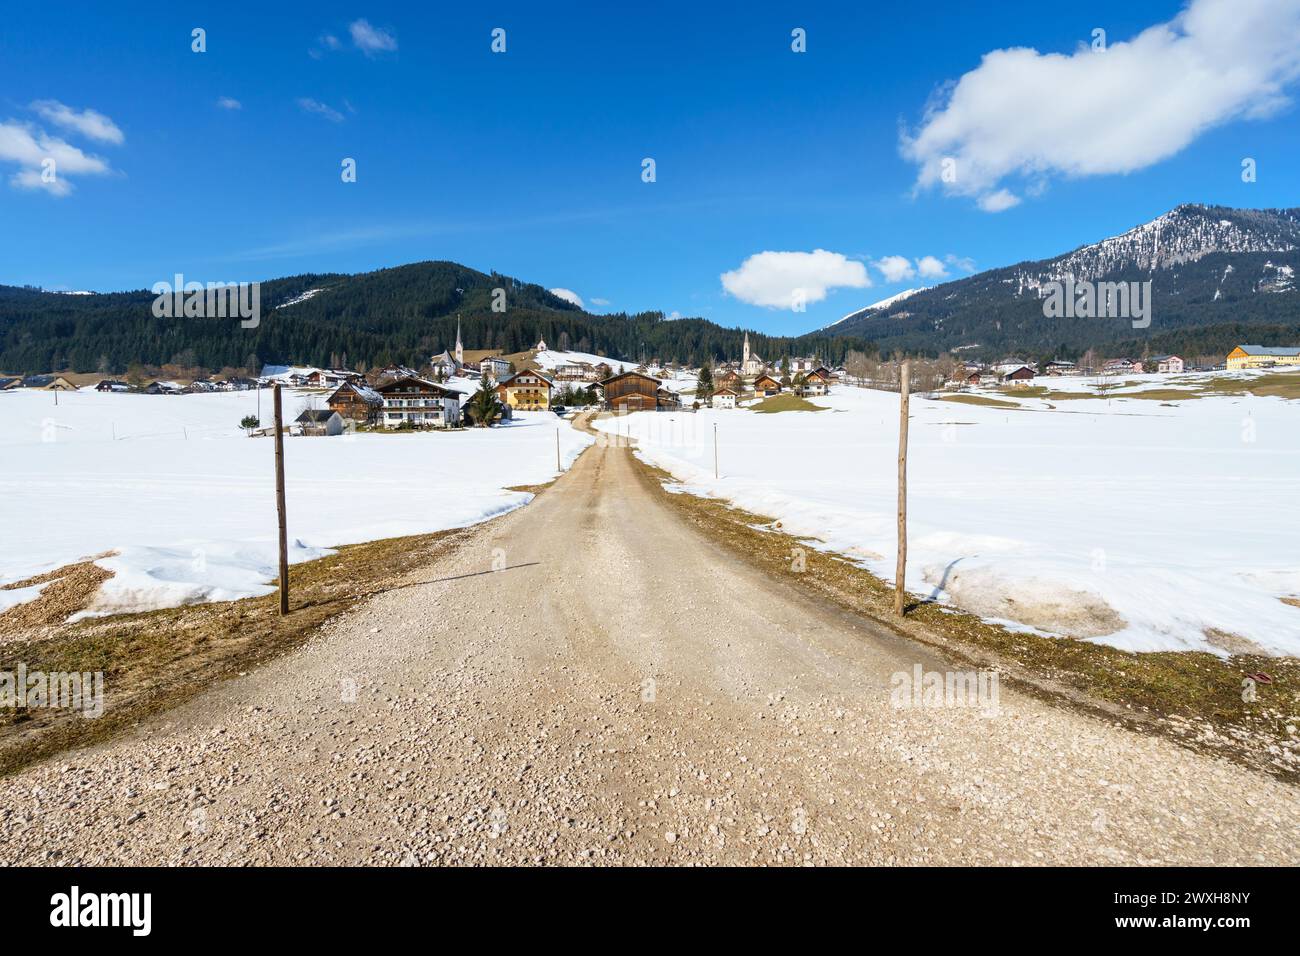 Ein schneebedecktes alpines Dorf mit einer unbefestigten Straße, die durch die Landschaft führt Stockfoto